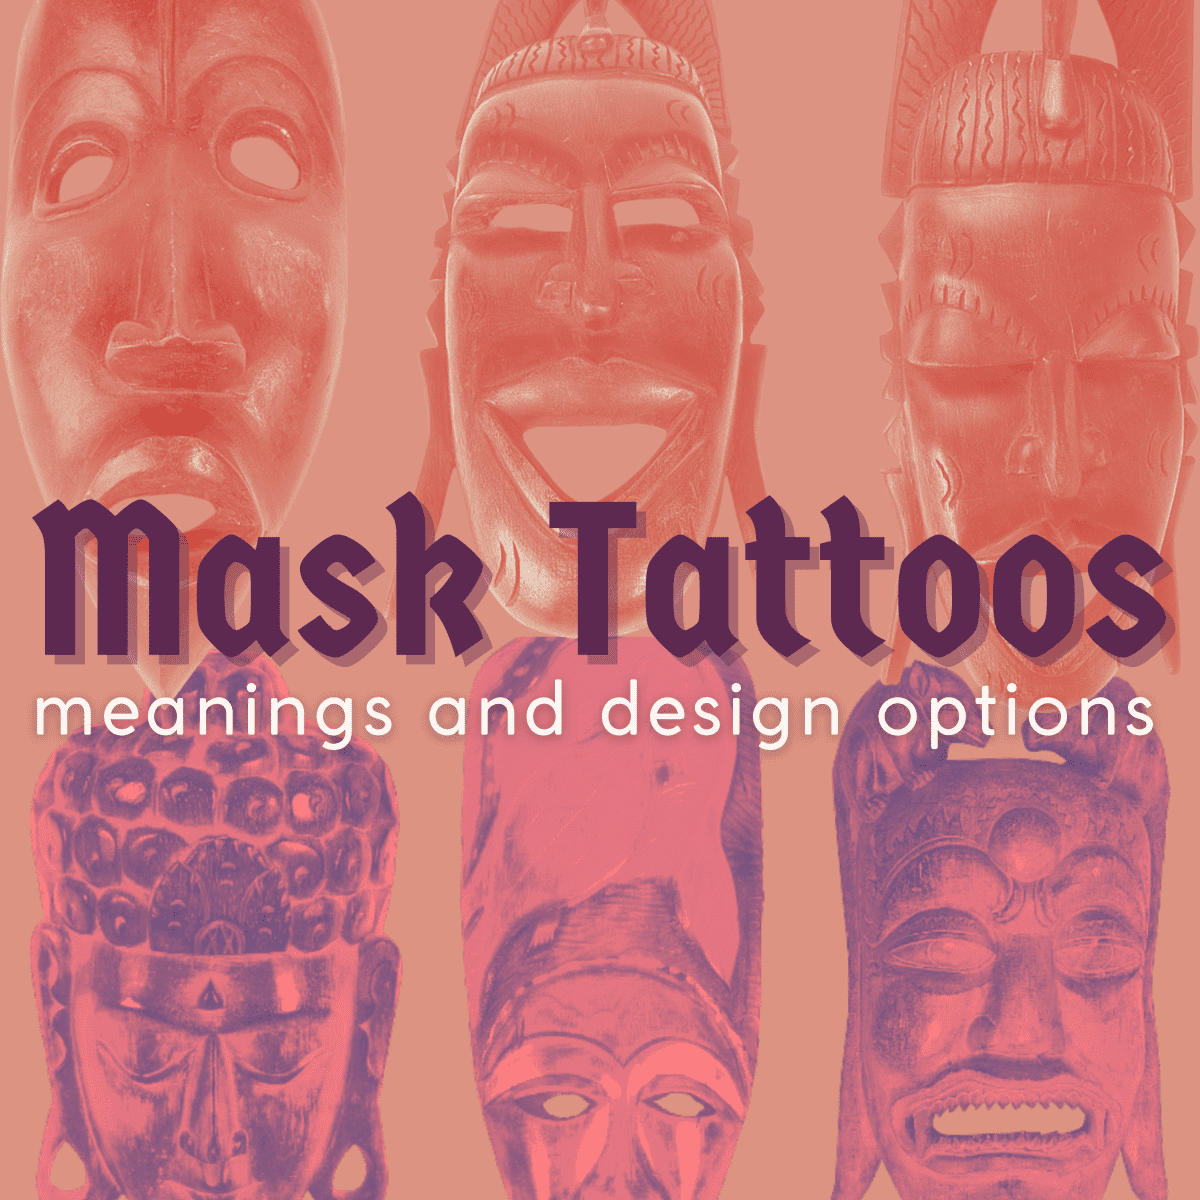 Hannya Masks (Japanese) Tattoo ideas | Fugutattoos by Fugutattoos on  DeviantArt